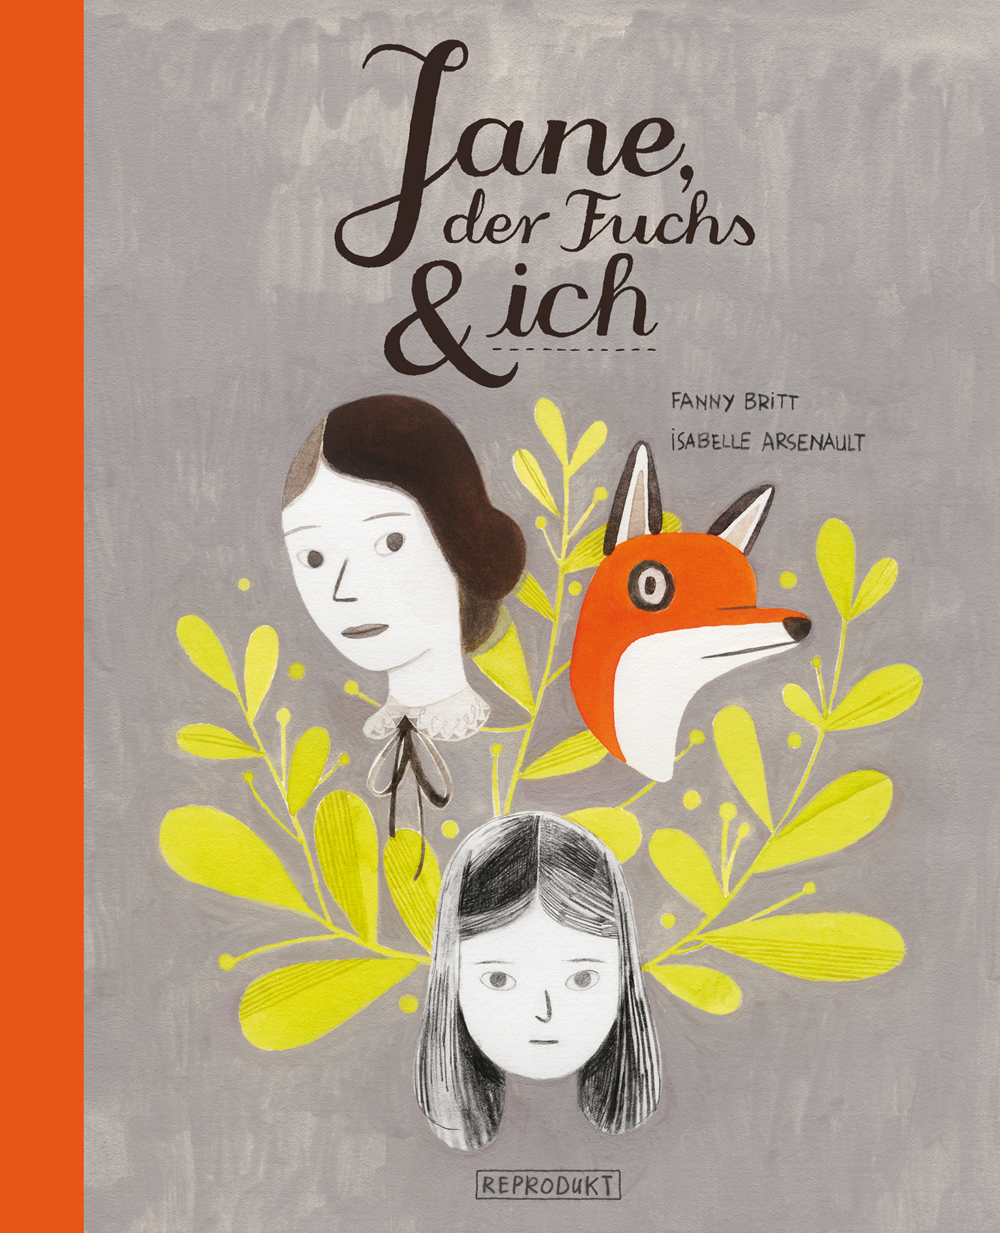 Jane, der Fuchs und ich Reprodukt-Verlag // Isabelle Arsenault & Fanny Britt